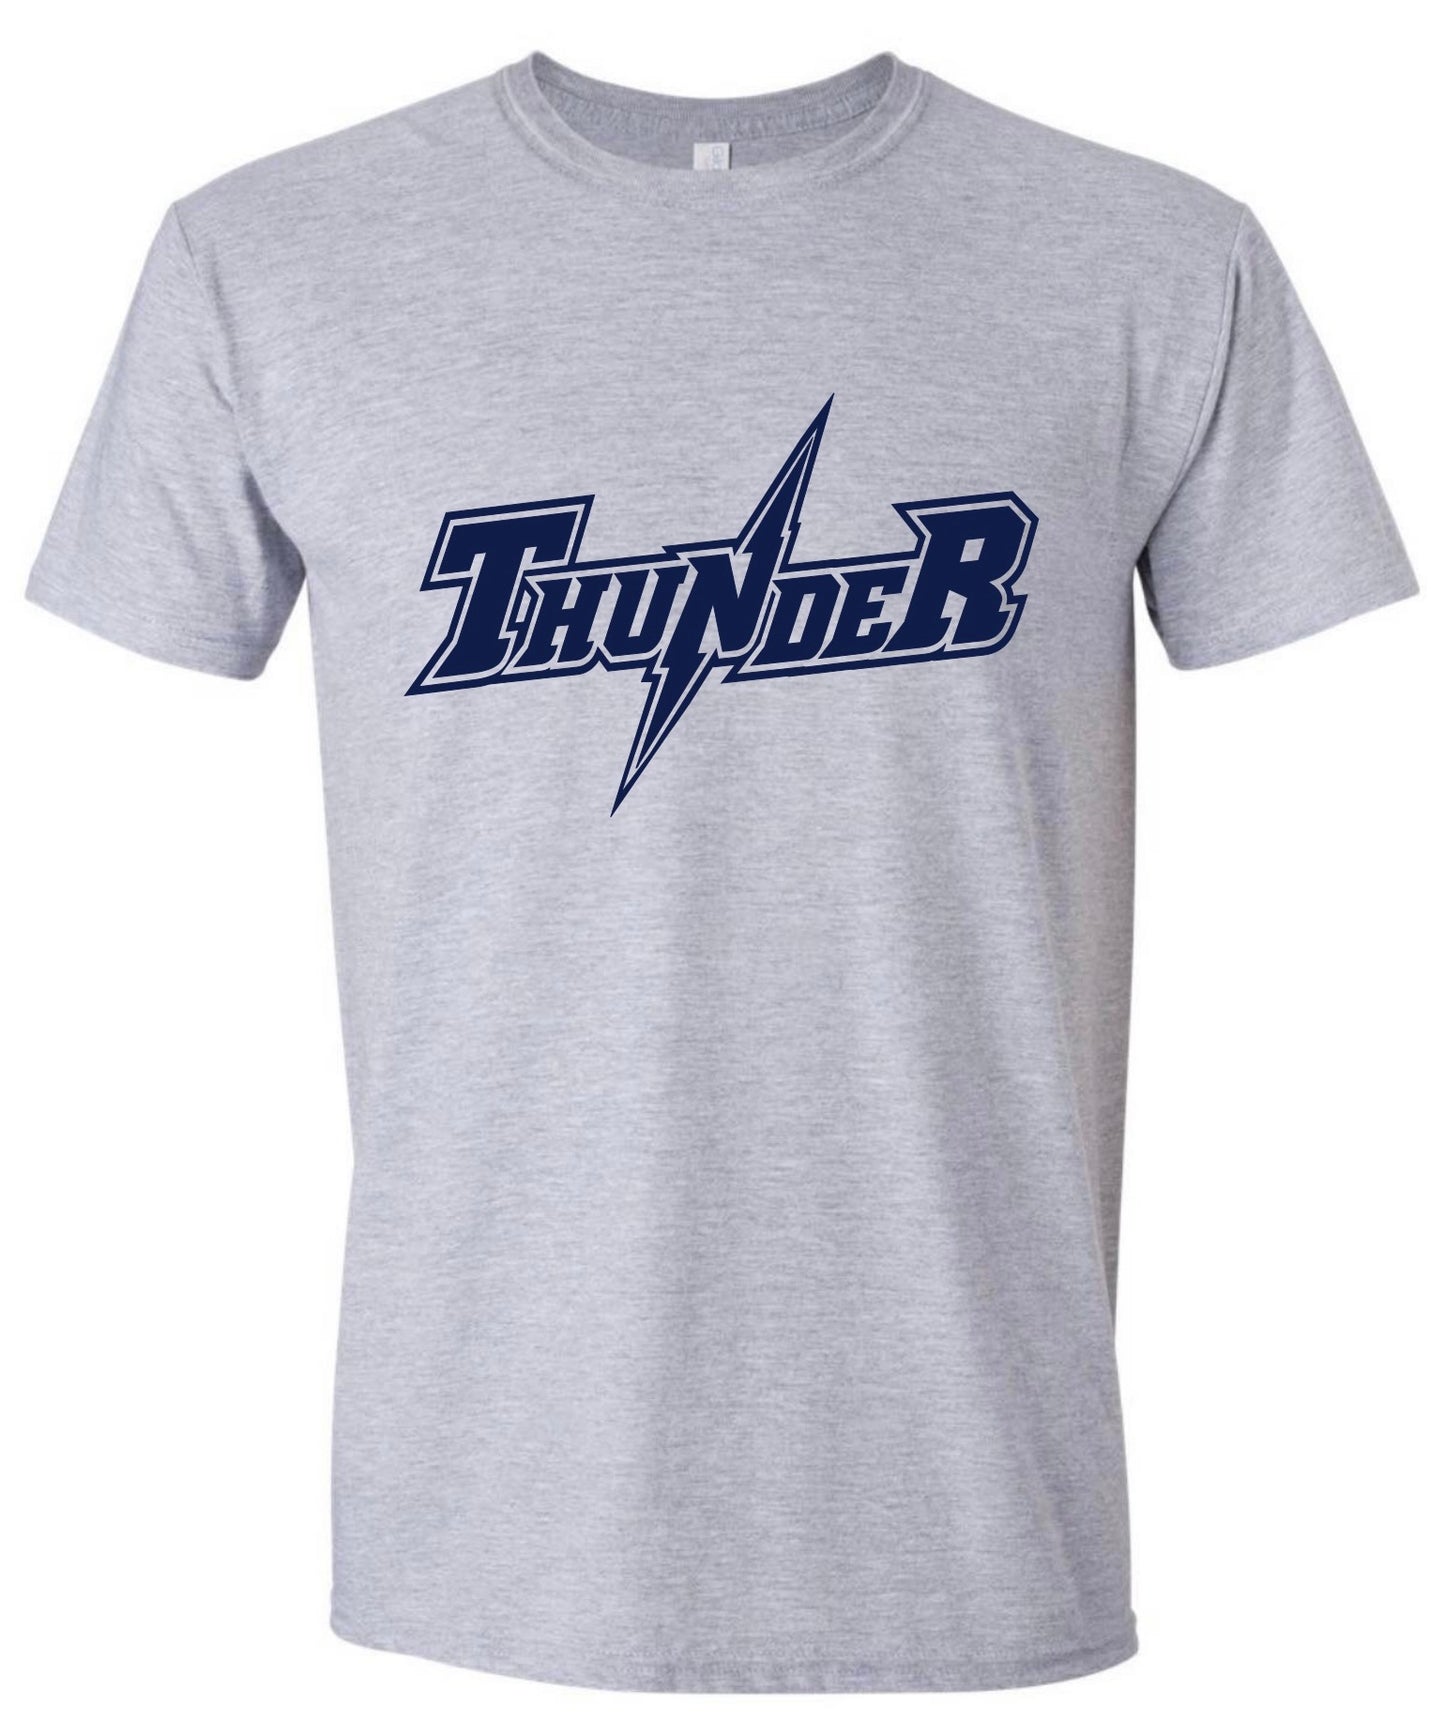 Abstract Thunder Tshirt